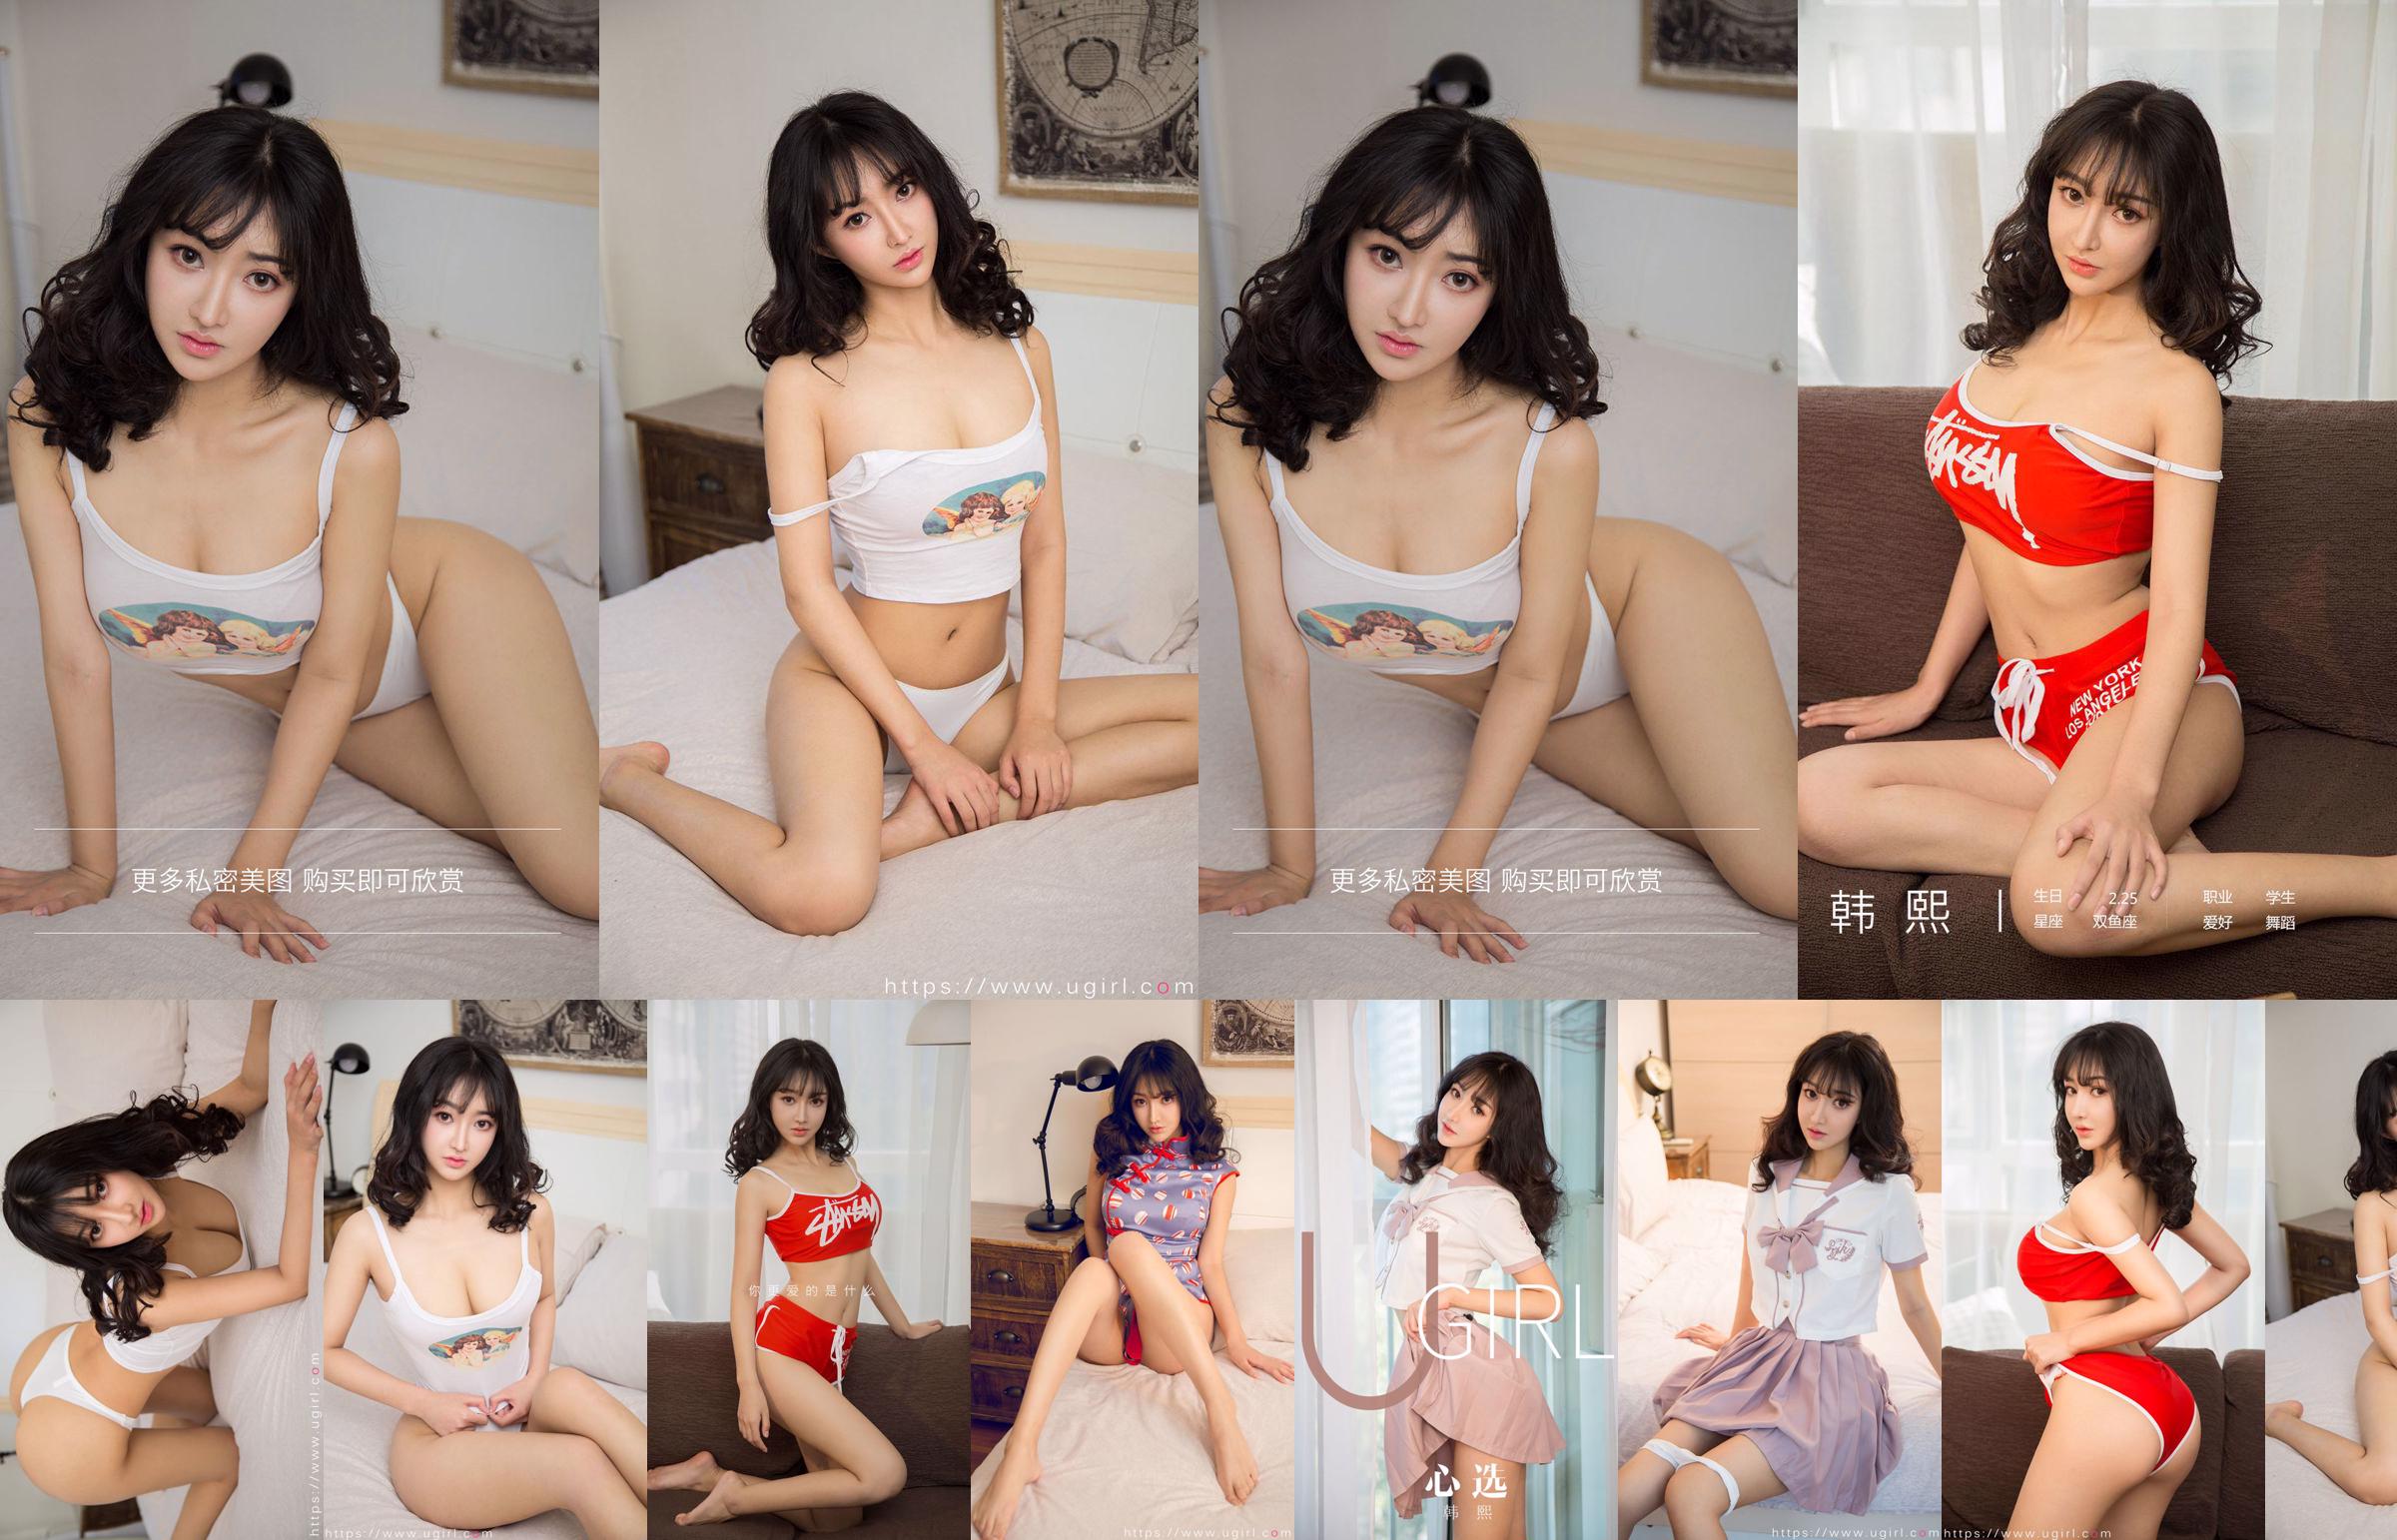 [Home Delivery WordGirls] No.812 Xi Shui Shui Beautiful Girl Trainee No.b1da86 Page 1